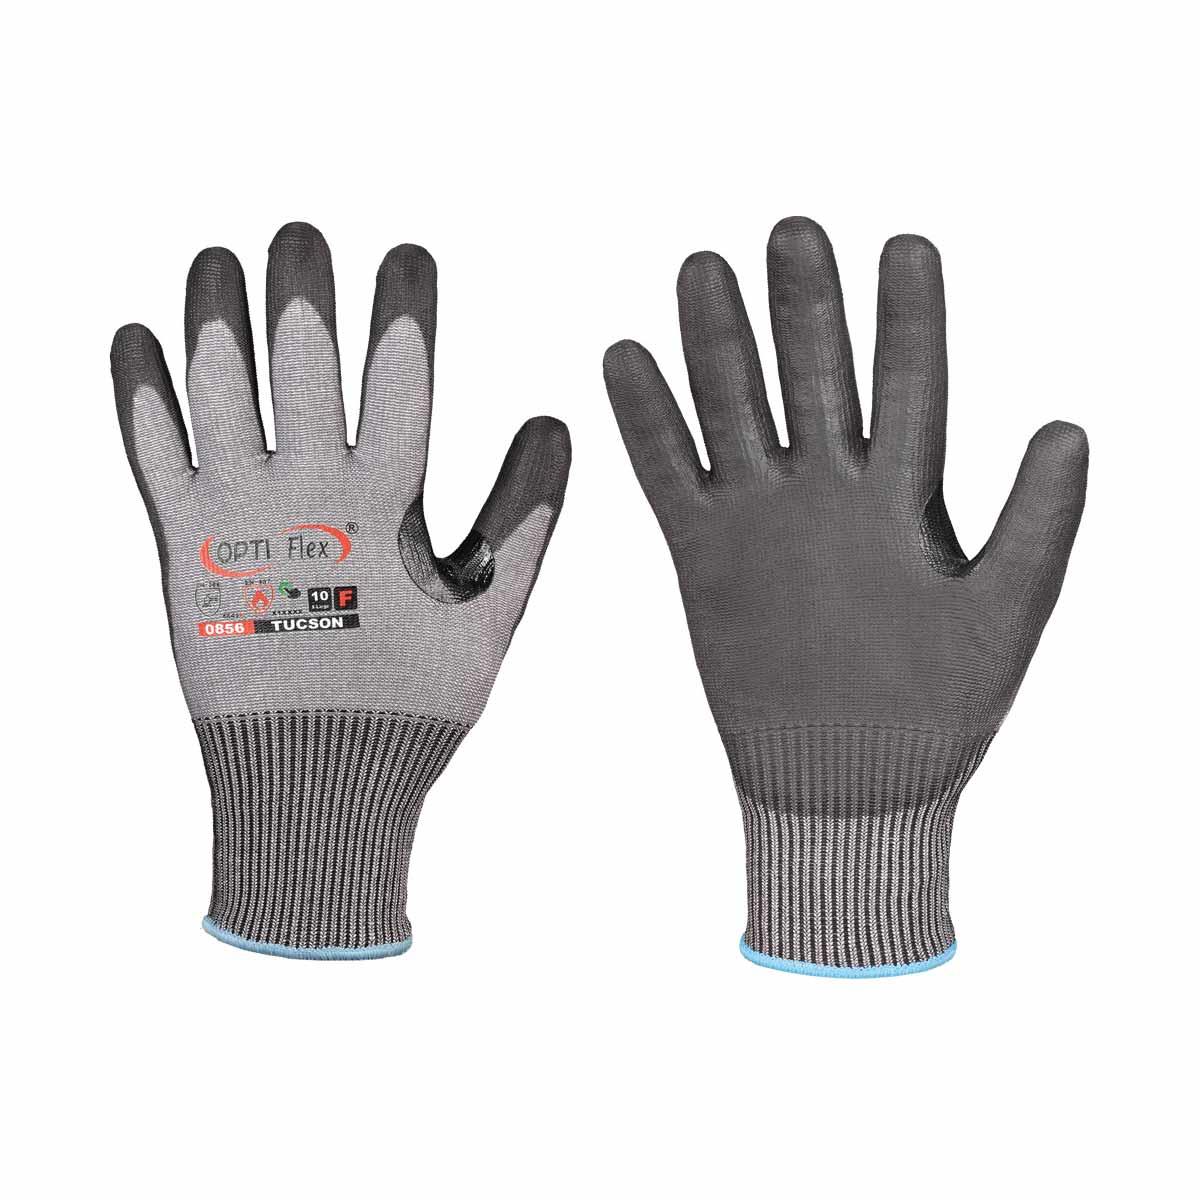 Schnittschutz Tucson OPTI Flex® Handschuh Gr. 7